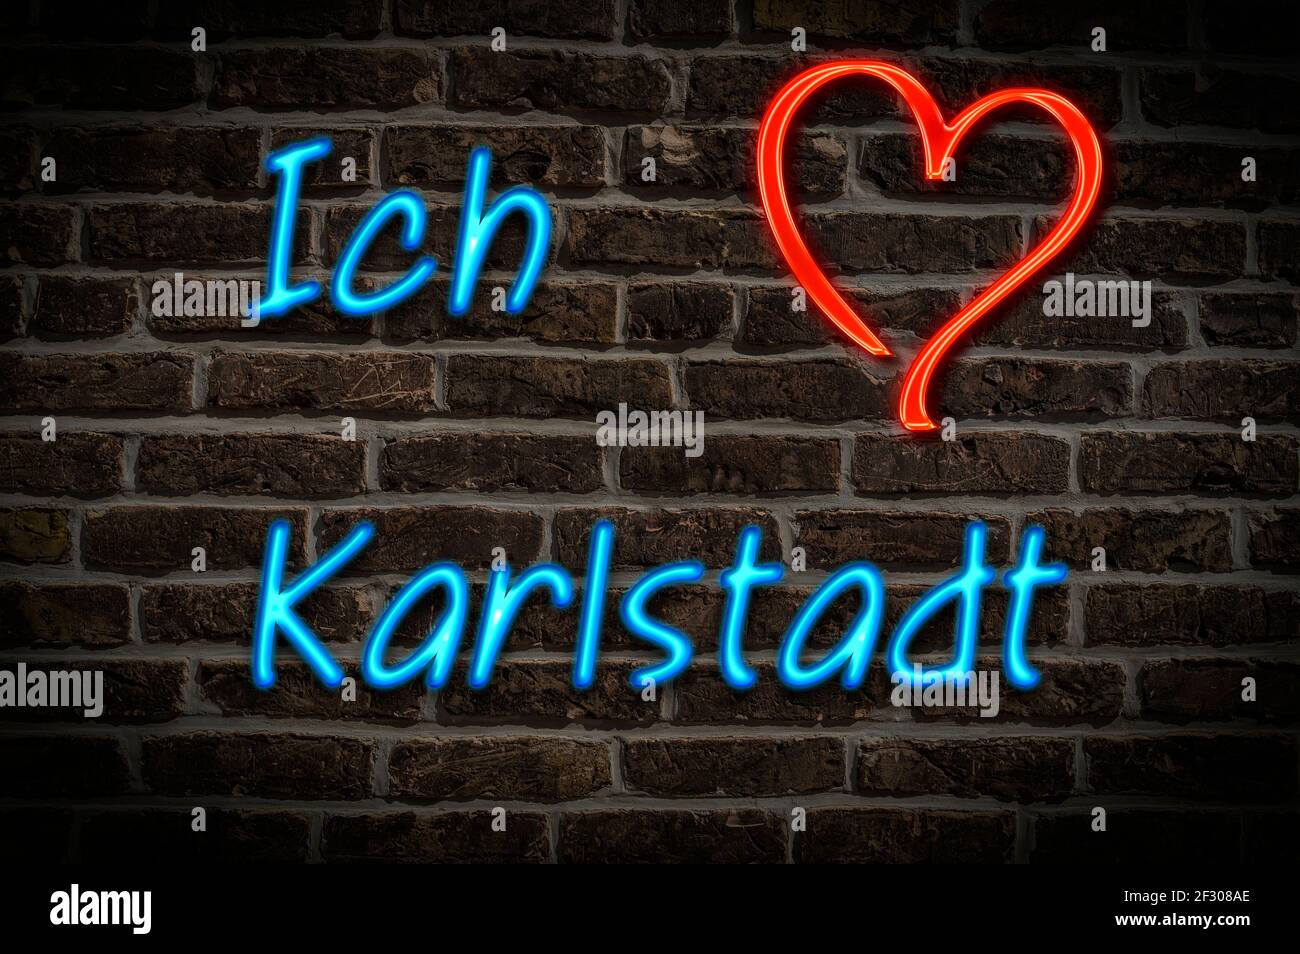 Leuchtreklame, Ich liebe Karlstadt, Bayern, Deutschland, Europa | Illuminated advertising, I love Karlstadt, Bavaria, Germany, Europe Stock Photo